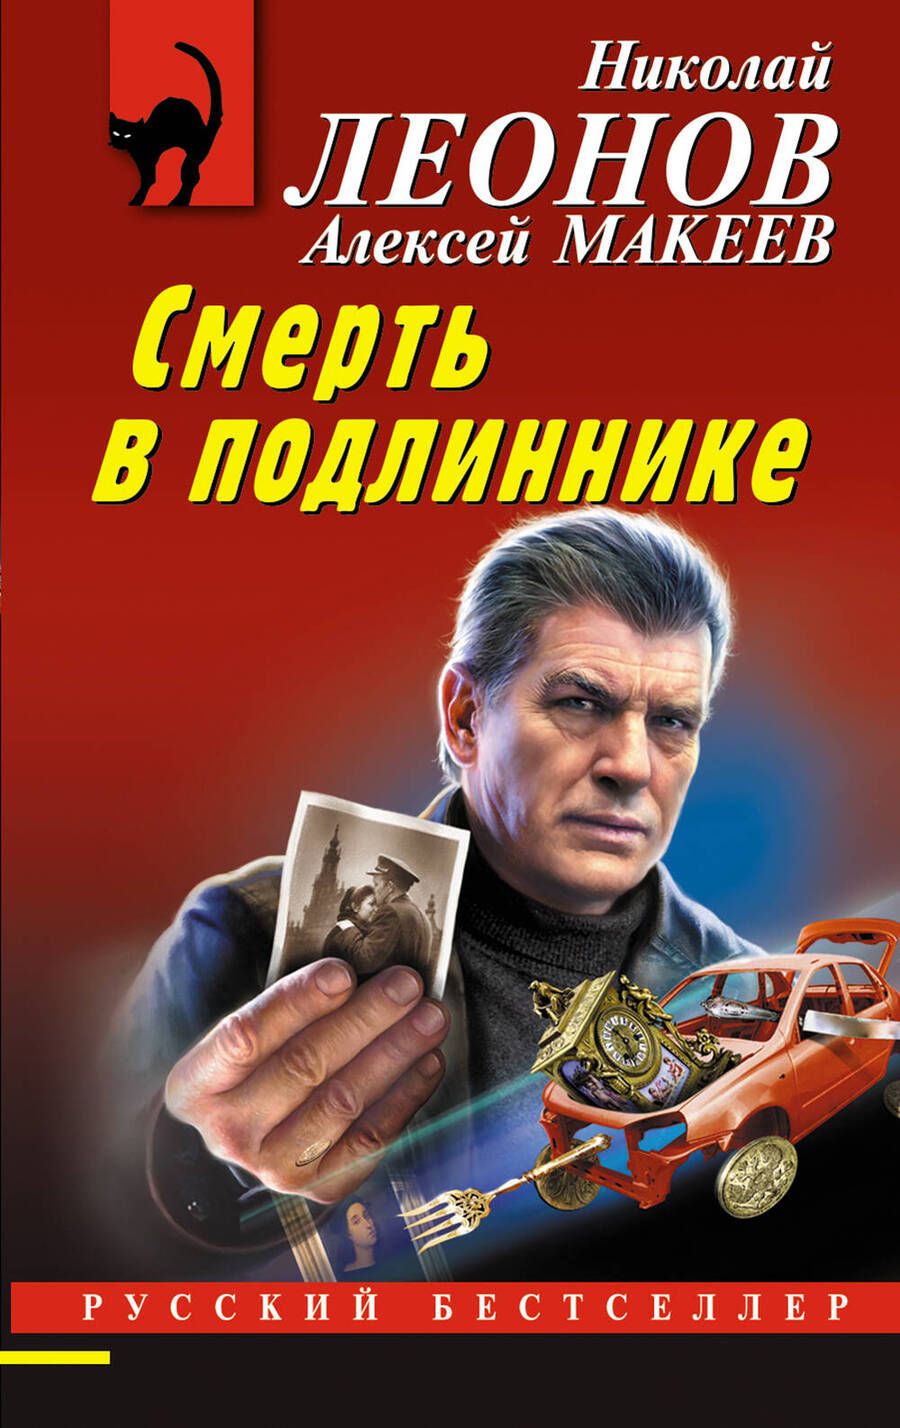 Обложка книги "Макеев, Леонов: Смерть в подлиннике"